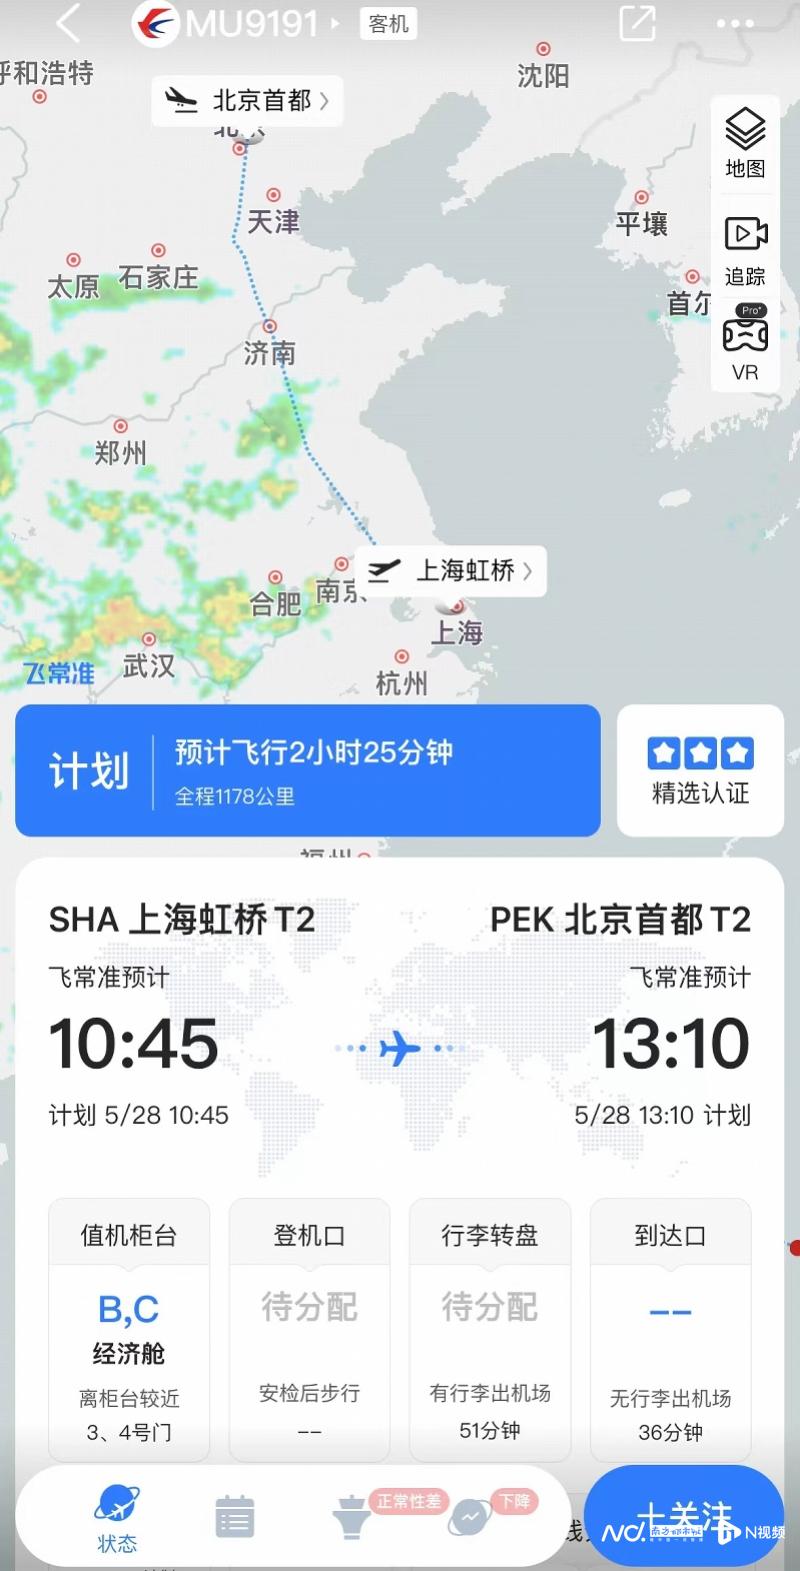 C919机票开售 上海虹桥飞成都天府票价919元